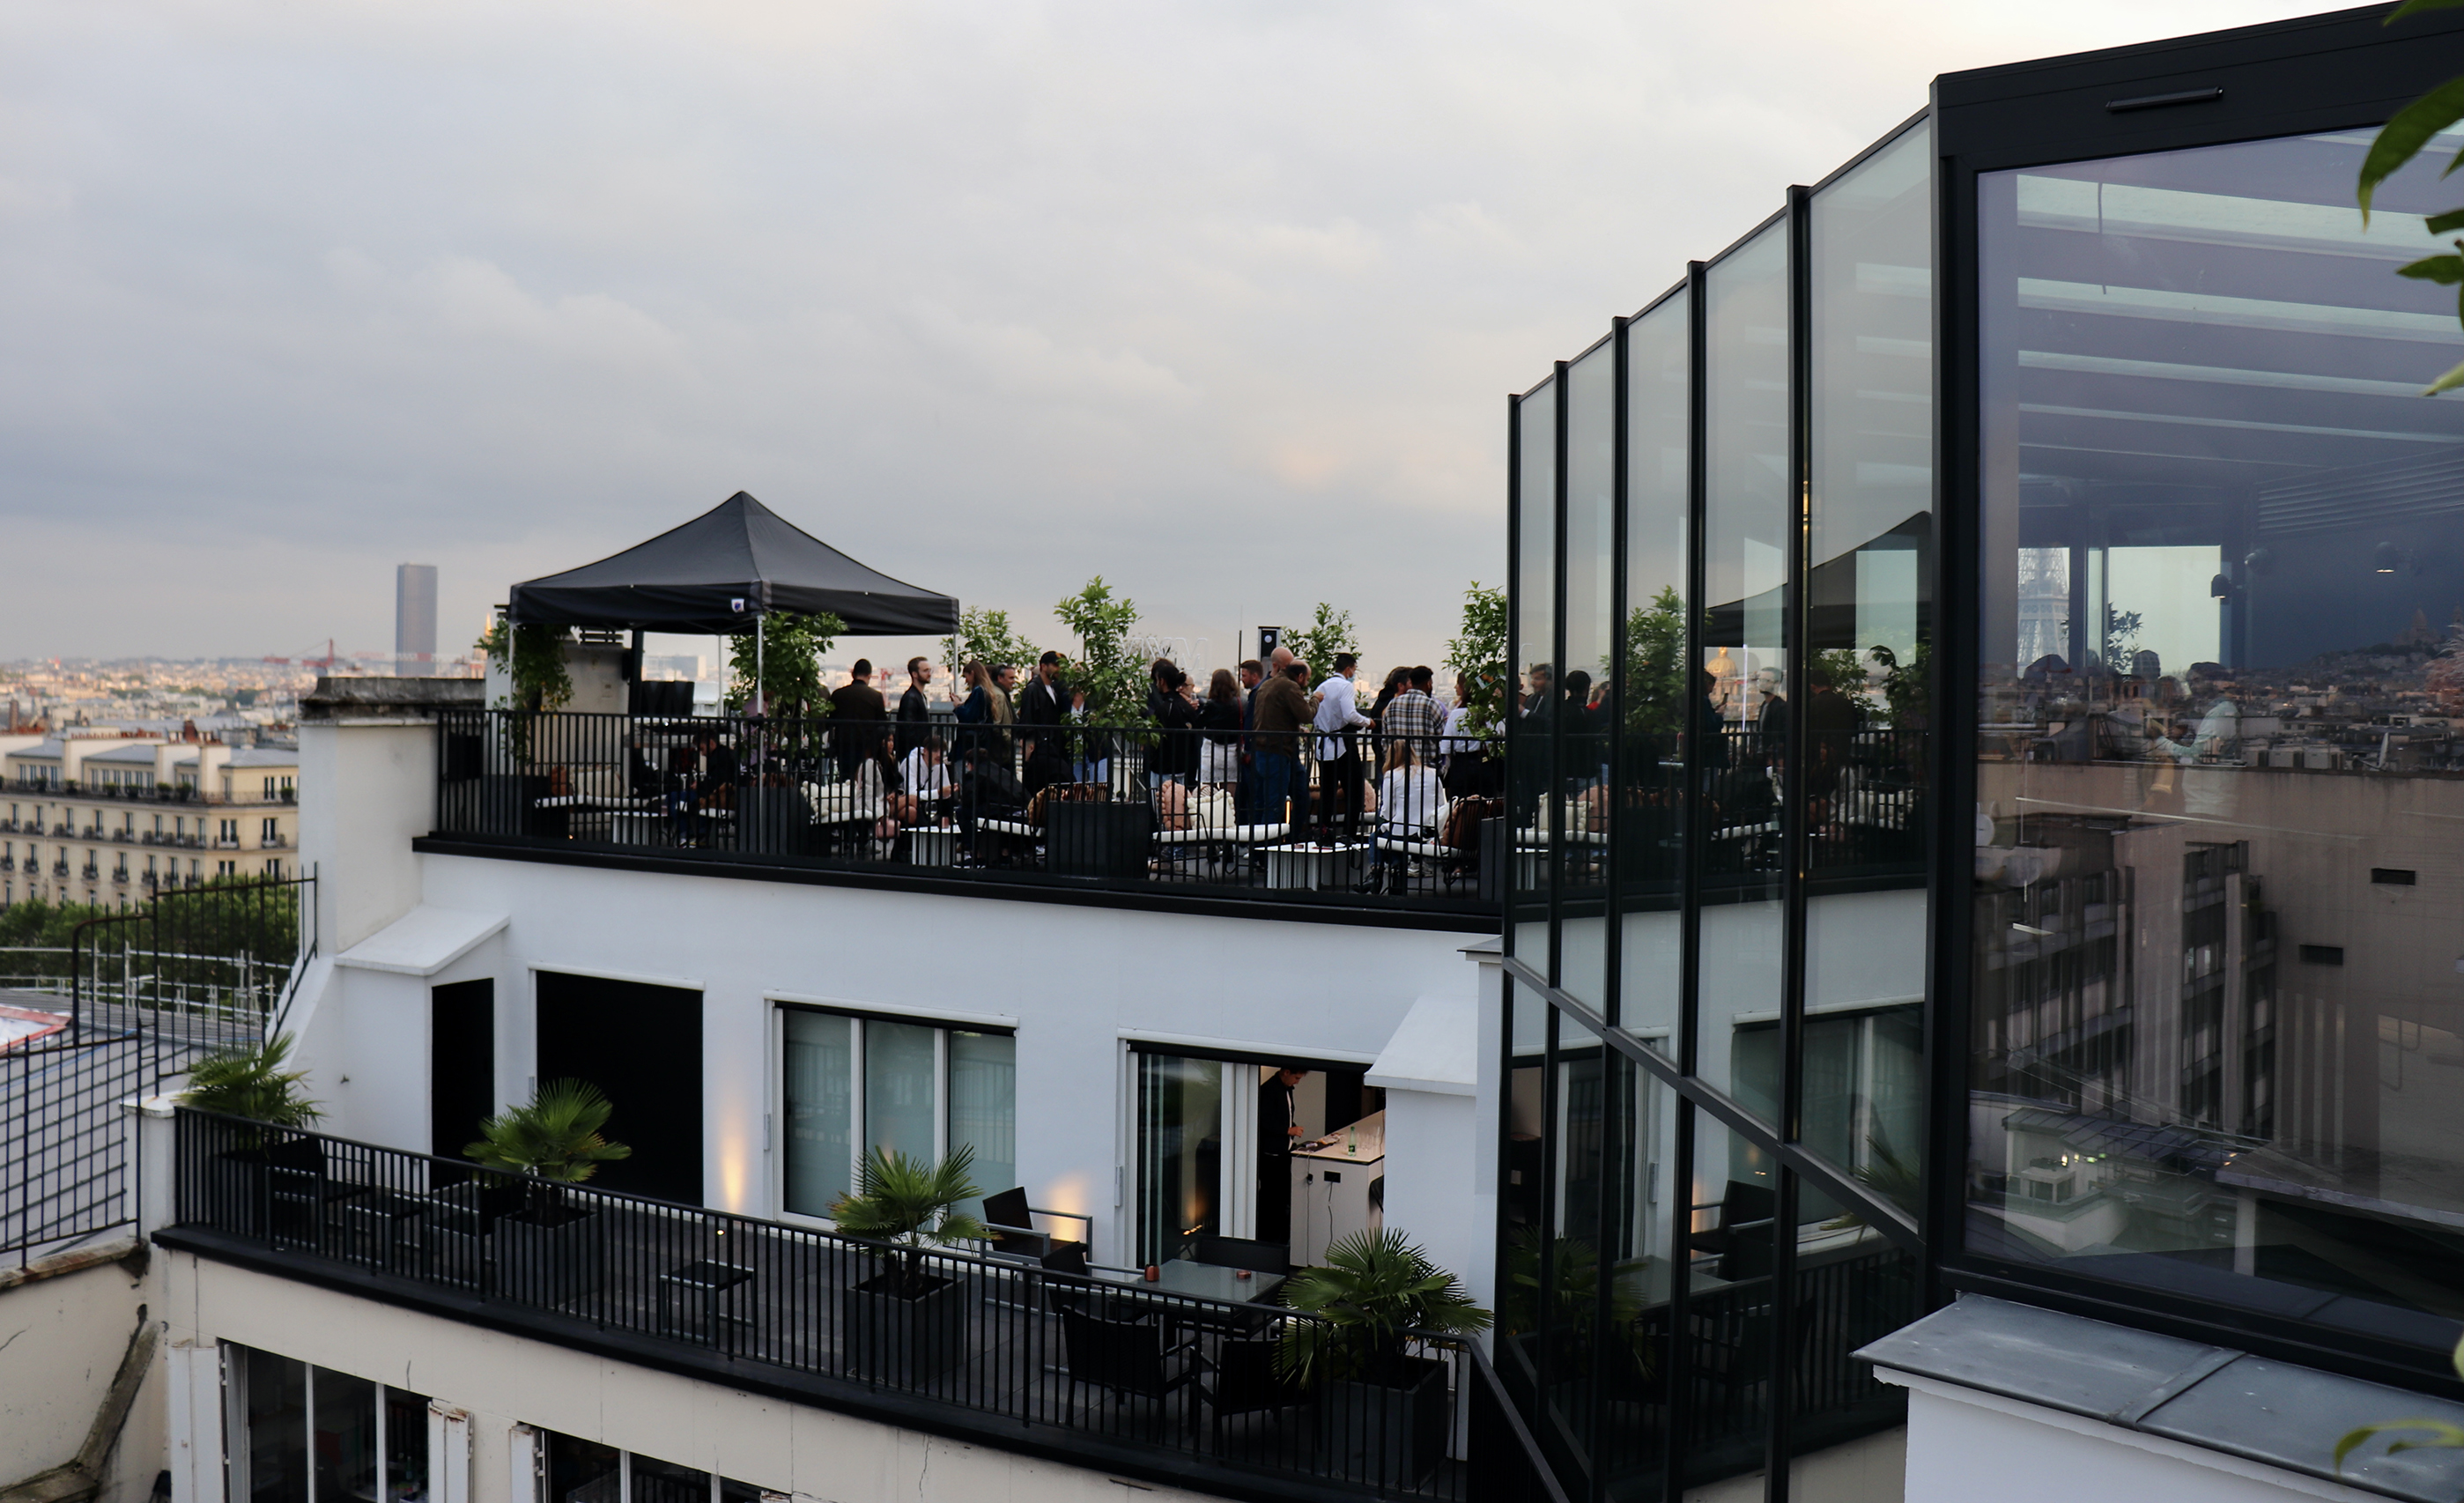  Soirée de lancement de la V2 de Mym sur le rooftop Vertige à Paris @ StarMag